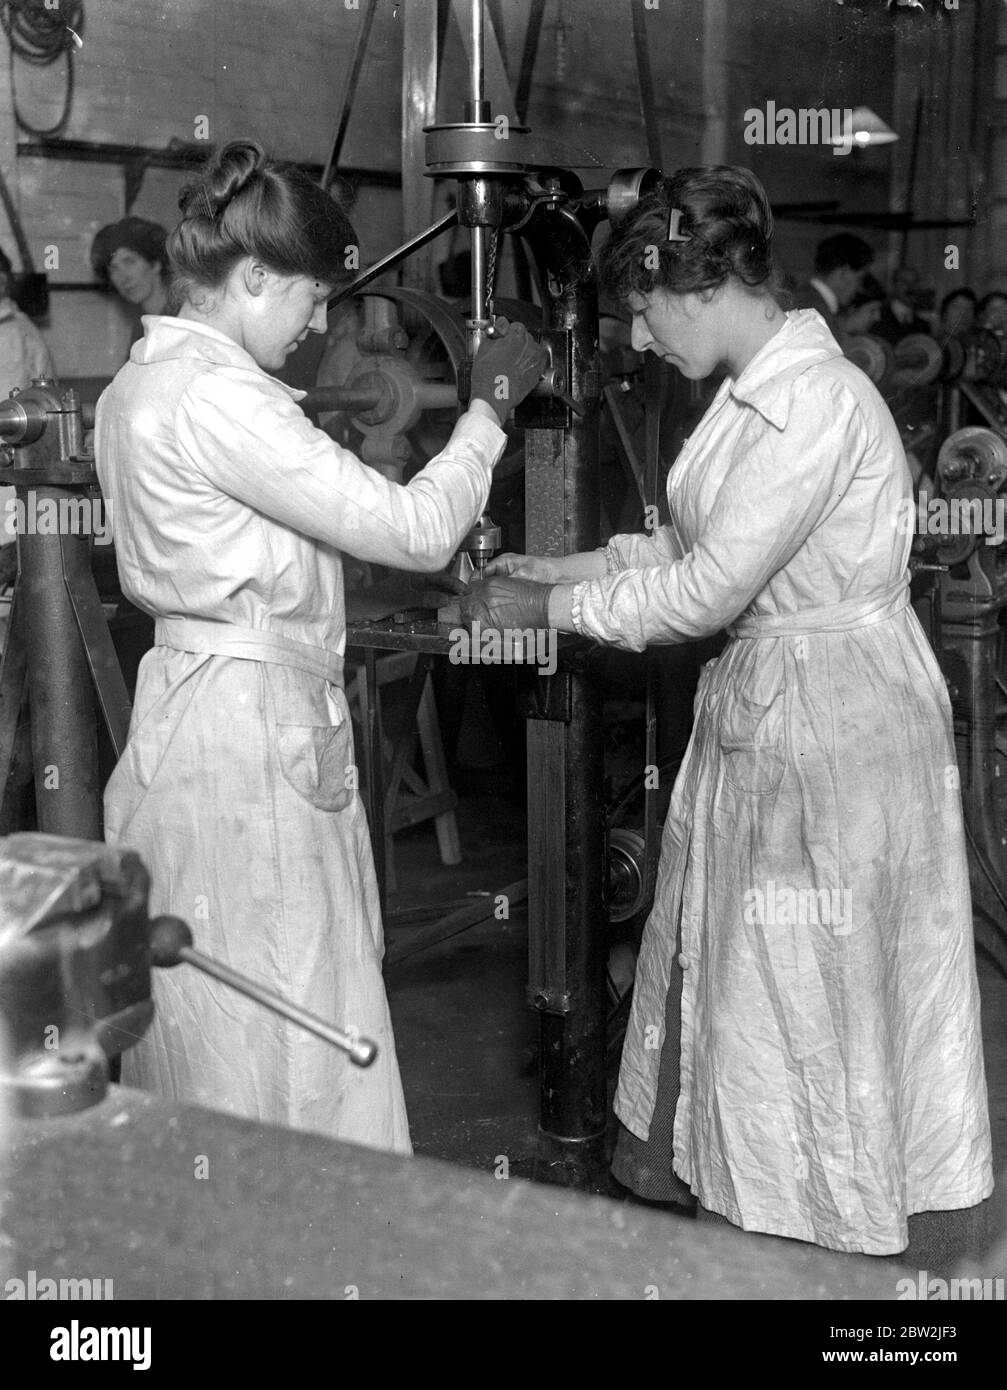 Jeune fille ayant reçu une formation pour les usines de munitions à la L.C.C. Institut technique, Shoreditch. 1914-1918 Banque D'Images